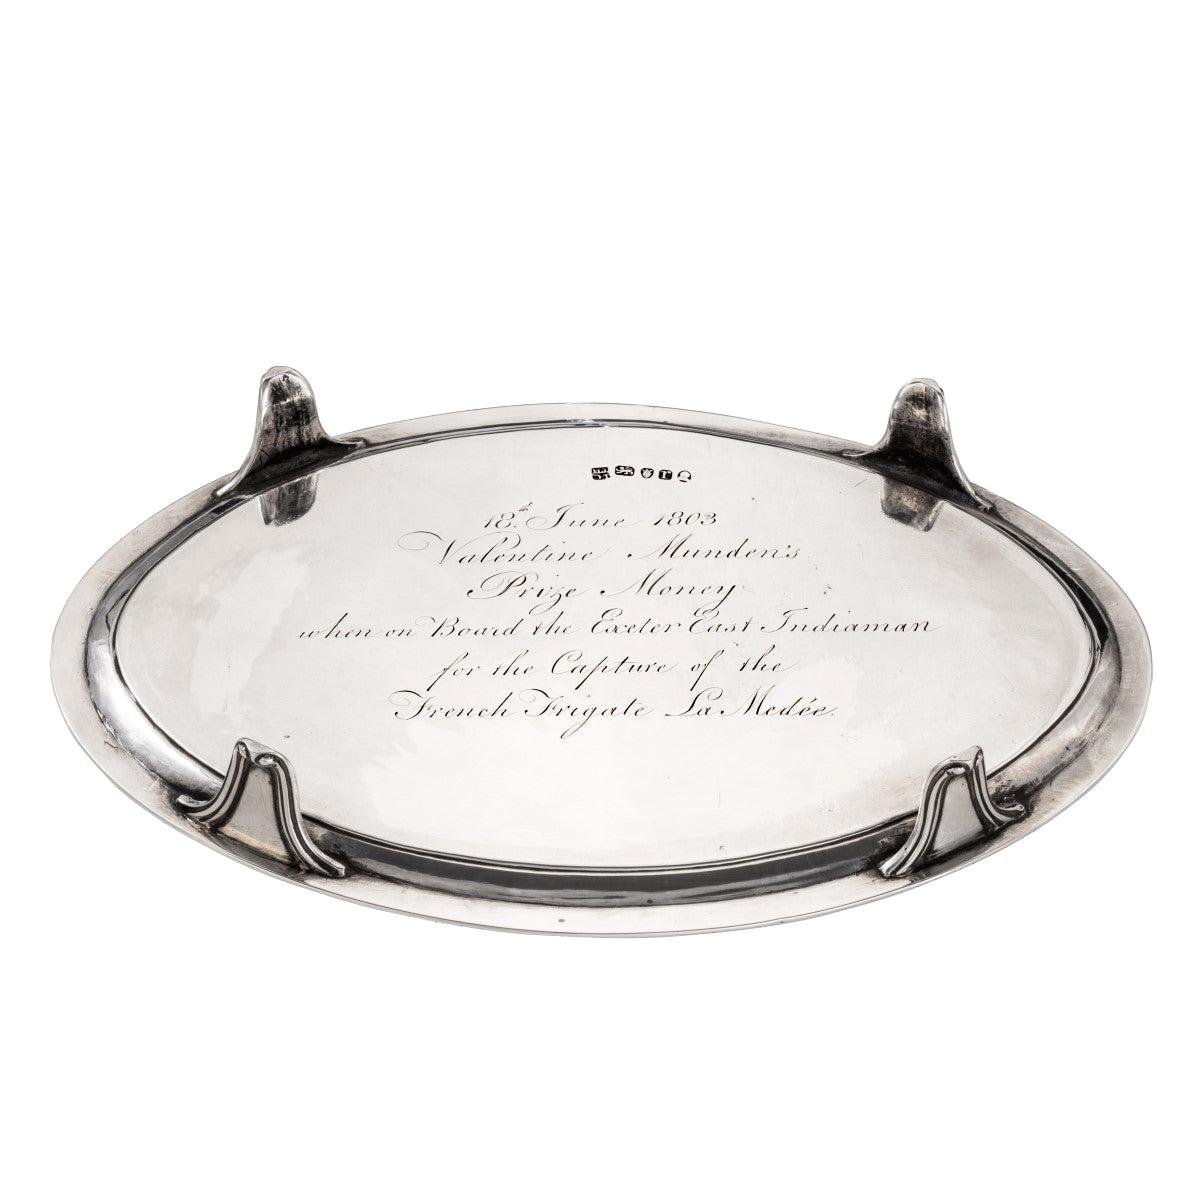 Valentine Mundens Preisgeld Silbertablett für Valentin, London, 1792